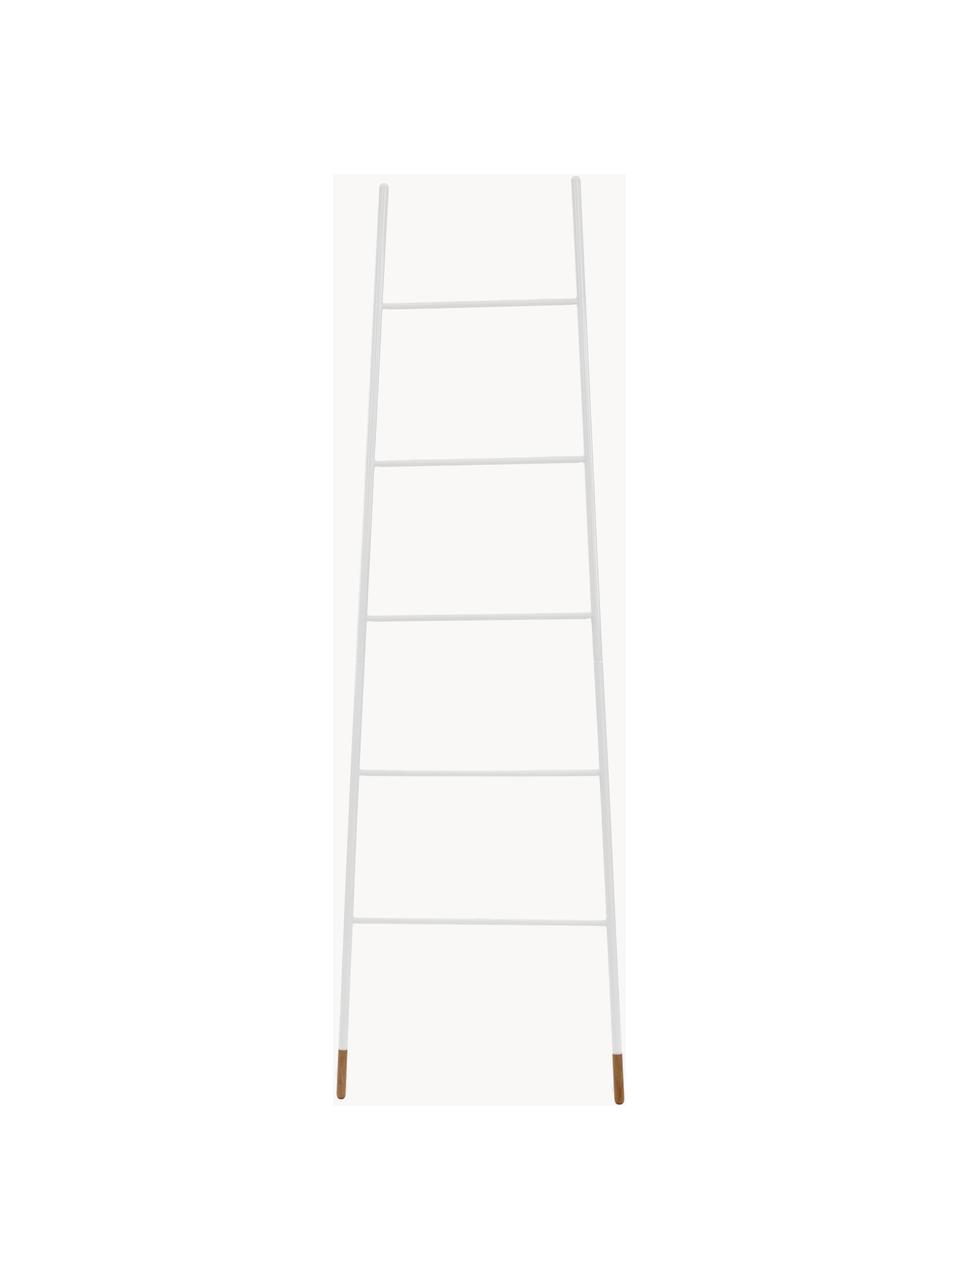 Scala portasciugamani Rack Ladder, Piedini: albero della gomma vernic, Bianco, Larg. 54 x Alt. 175 cm